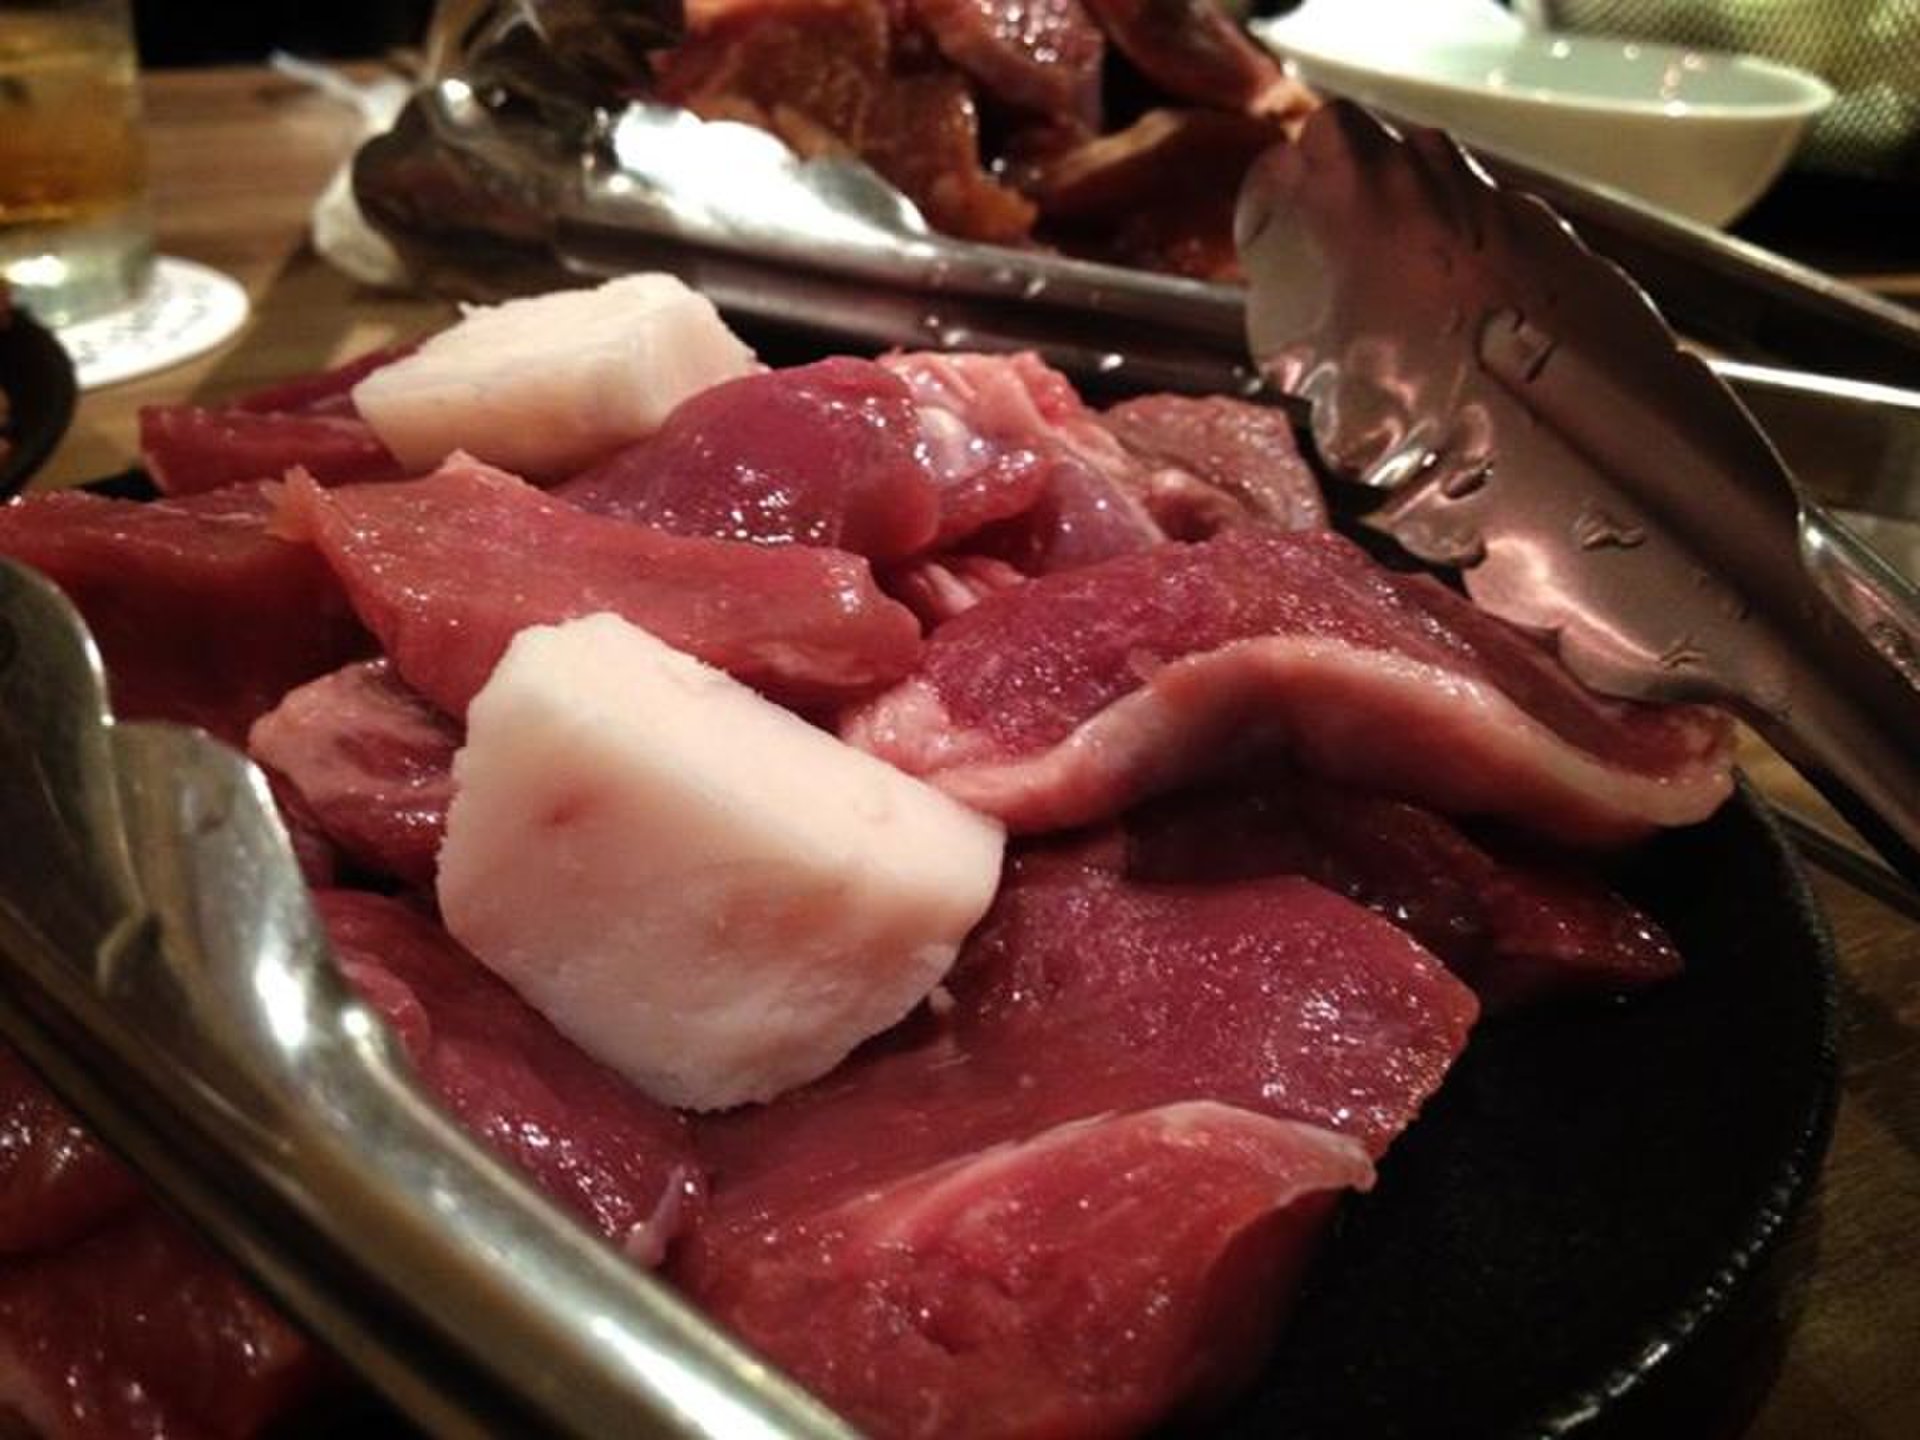 【都内で美味しいジンギスカン】人気ジンギスカン店ゆきだるまでリーズナブルに美味しい羊肉を食べる。